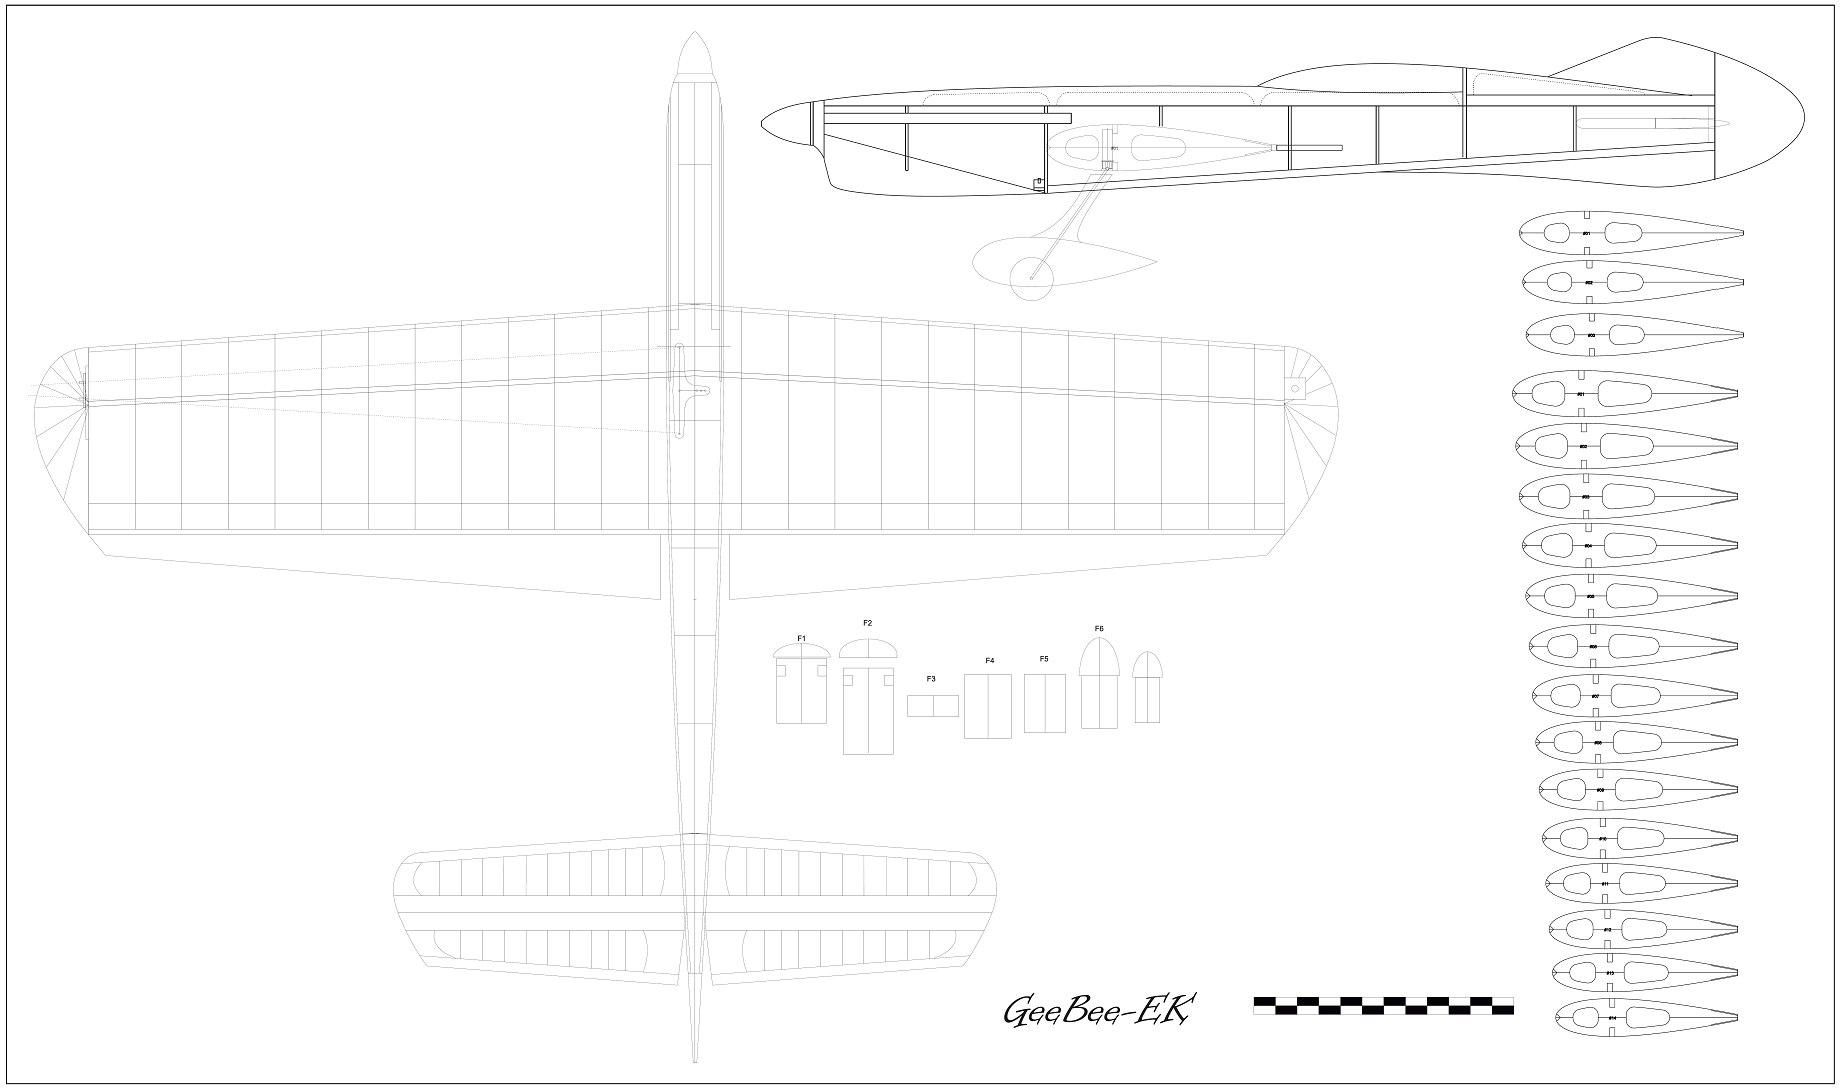 GeeBee_EK пилотажная кордовая модель ч.1 "Проектирование"